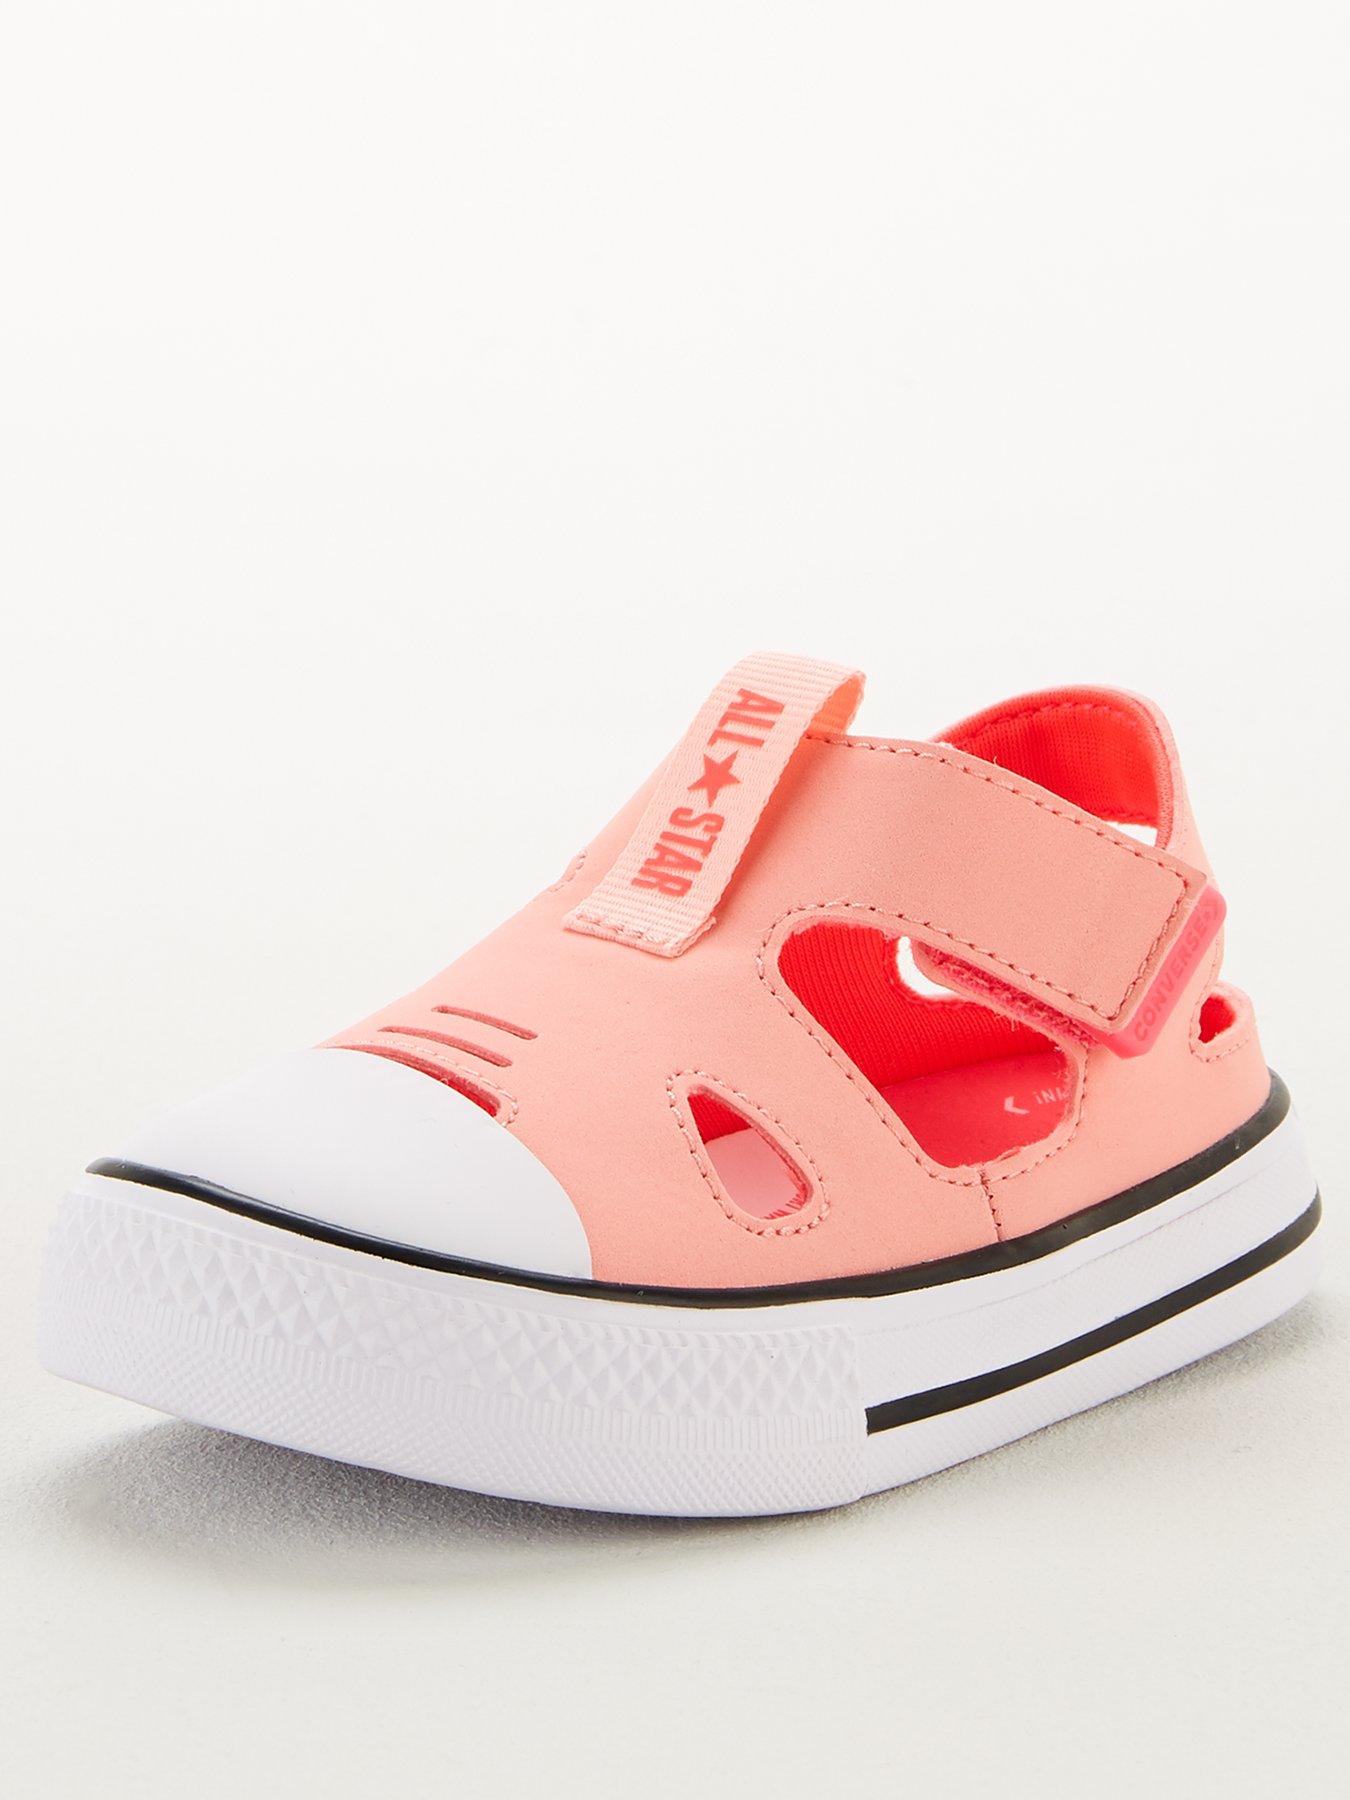 converse infant sandals